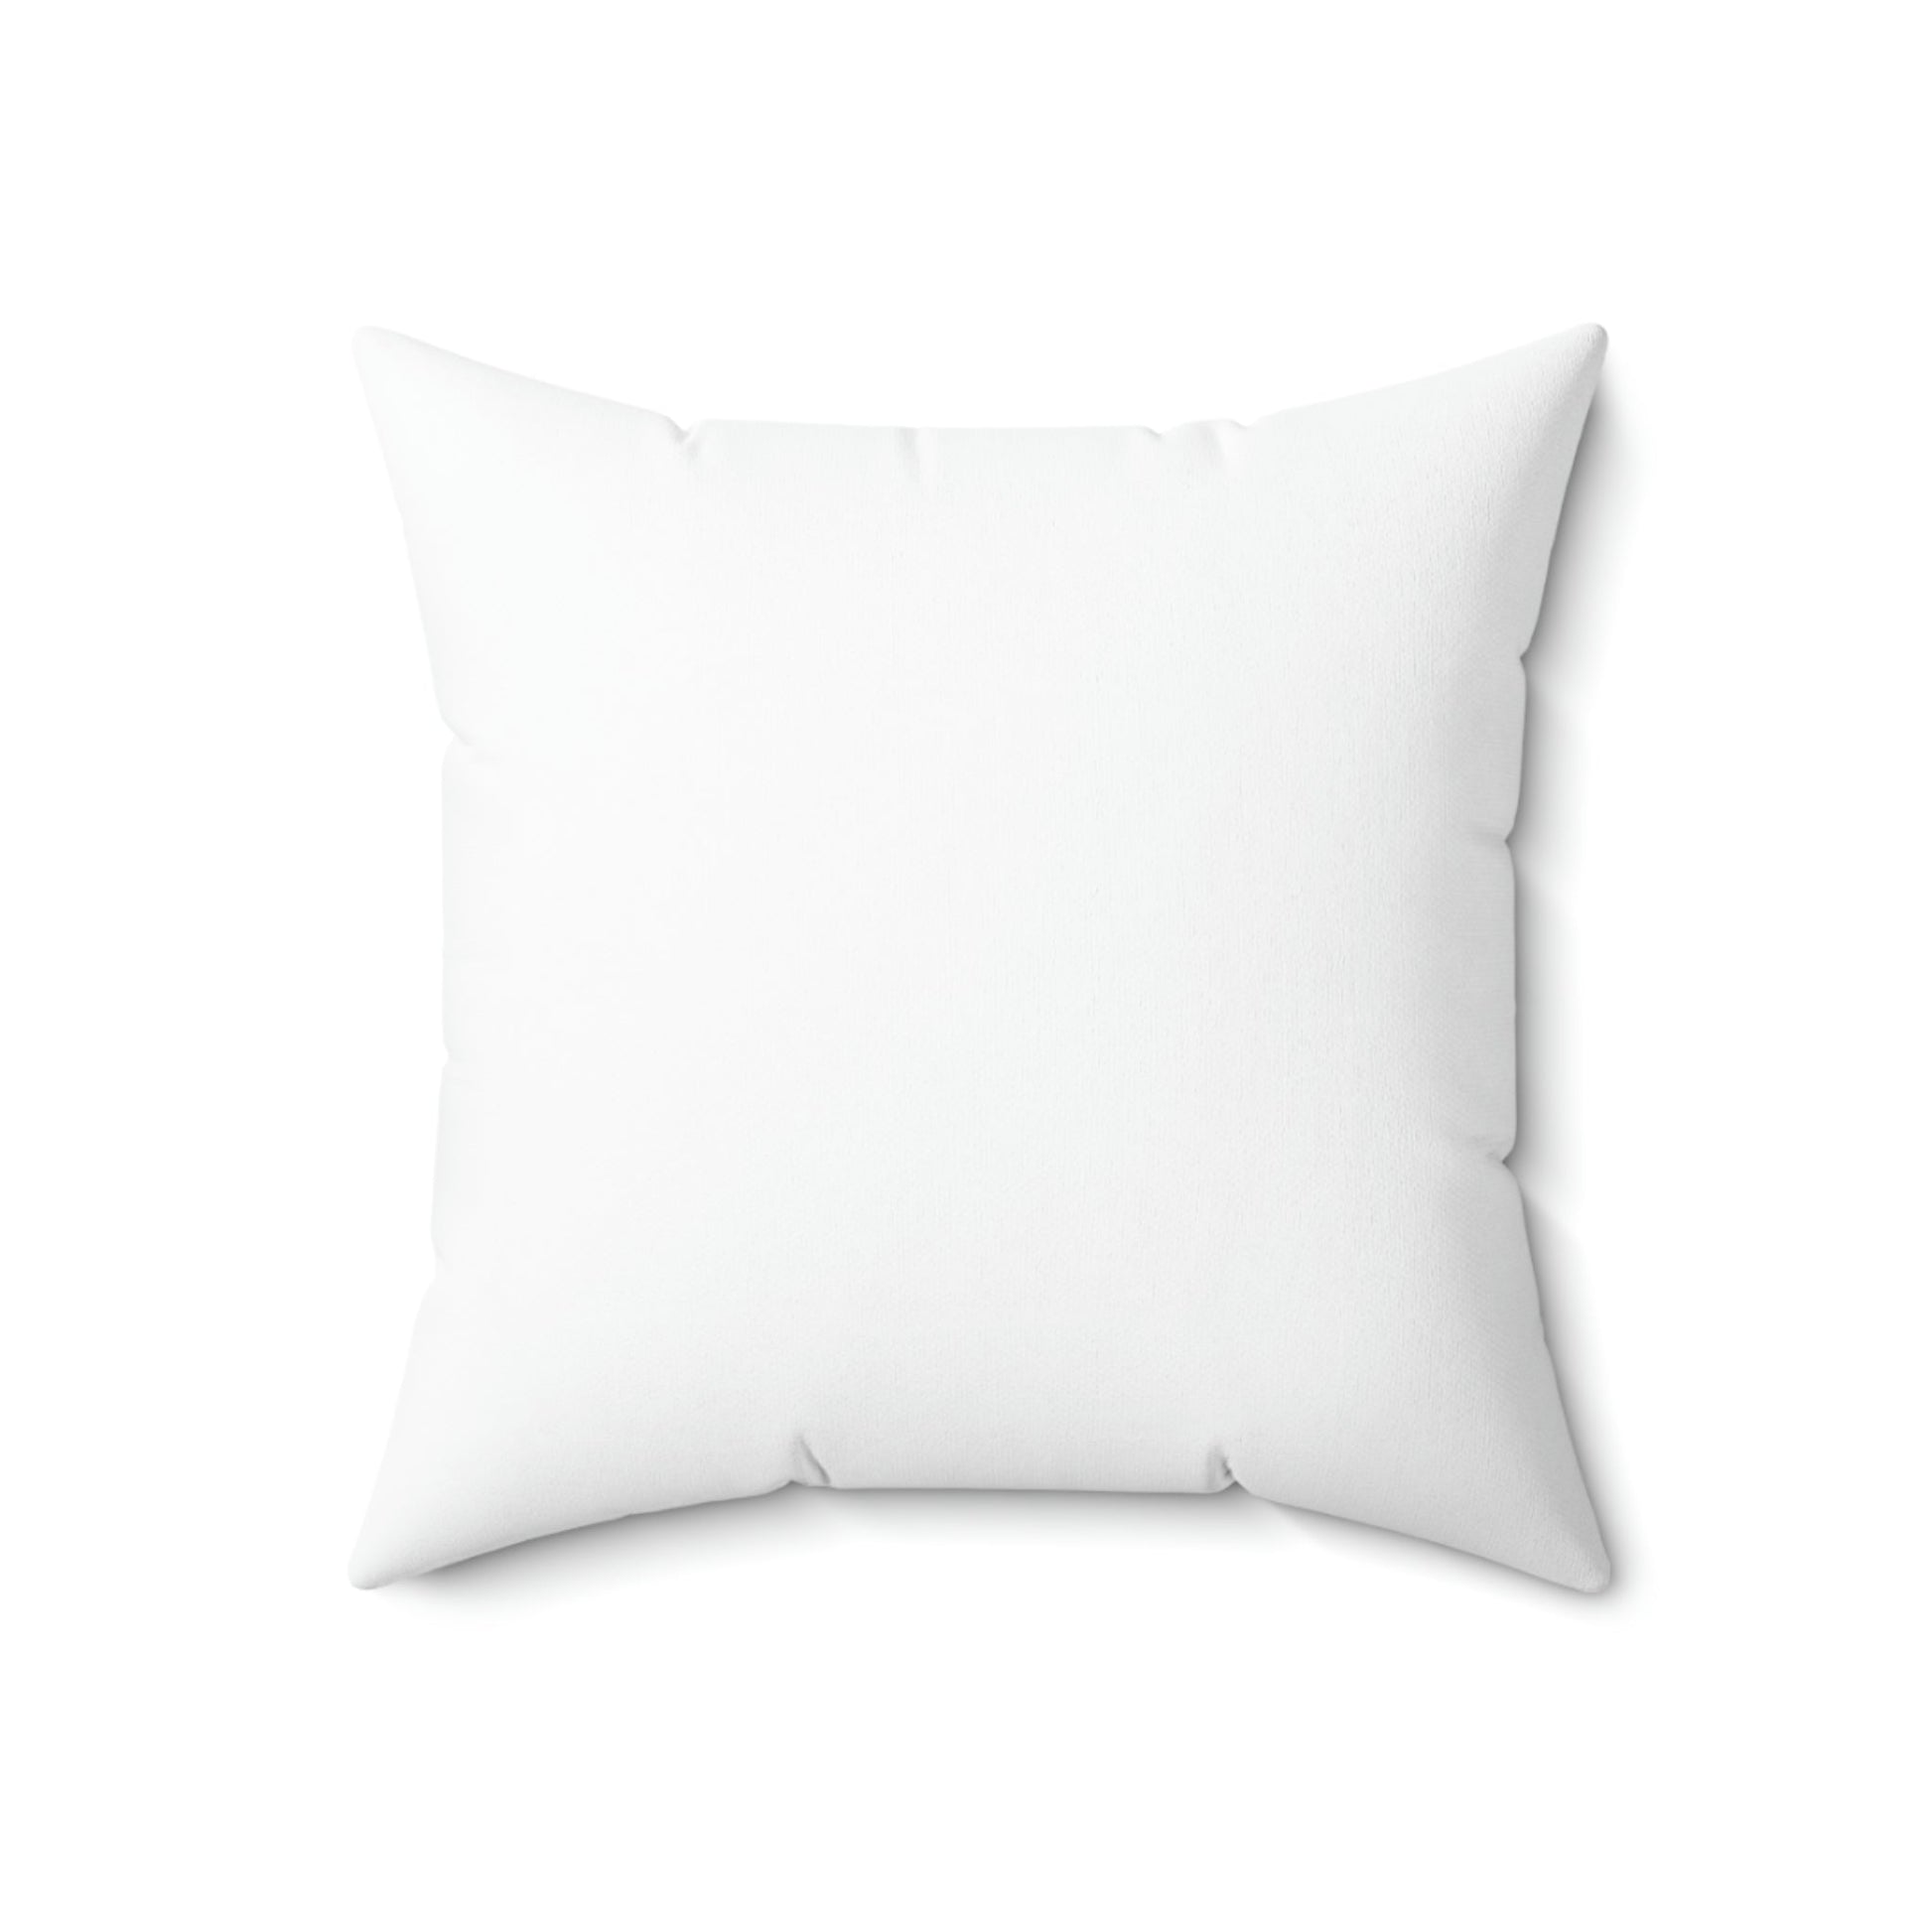 Spun Polyester Throw Pillows - "THE SAILS" Kelowna, BC